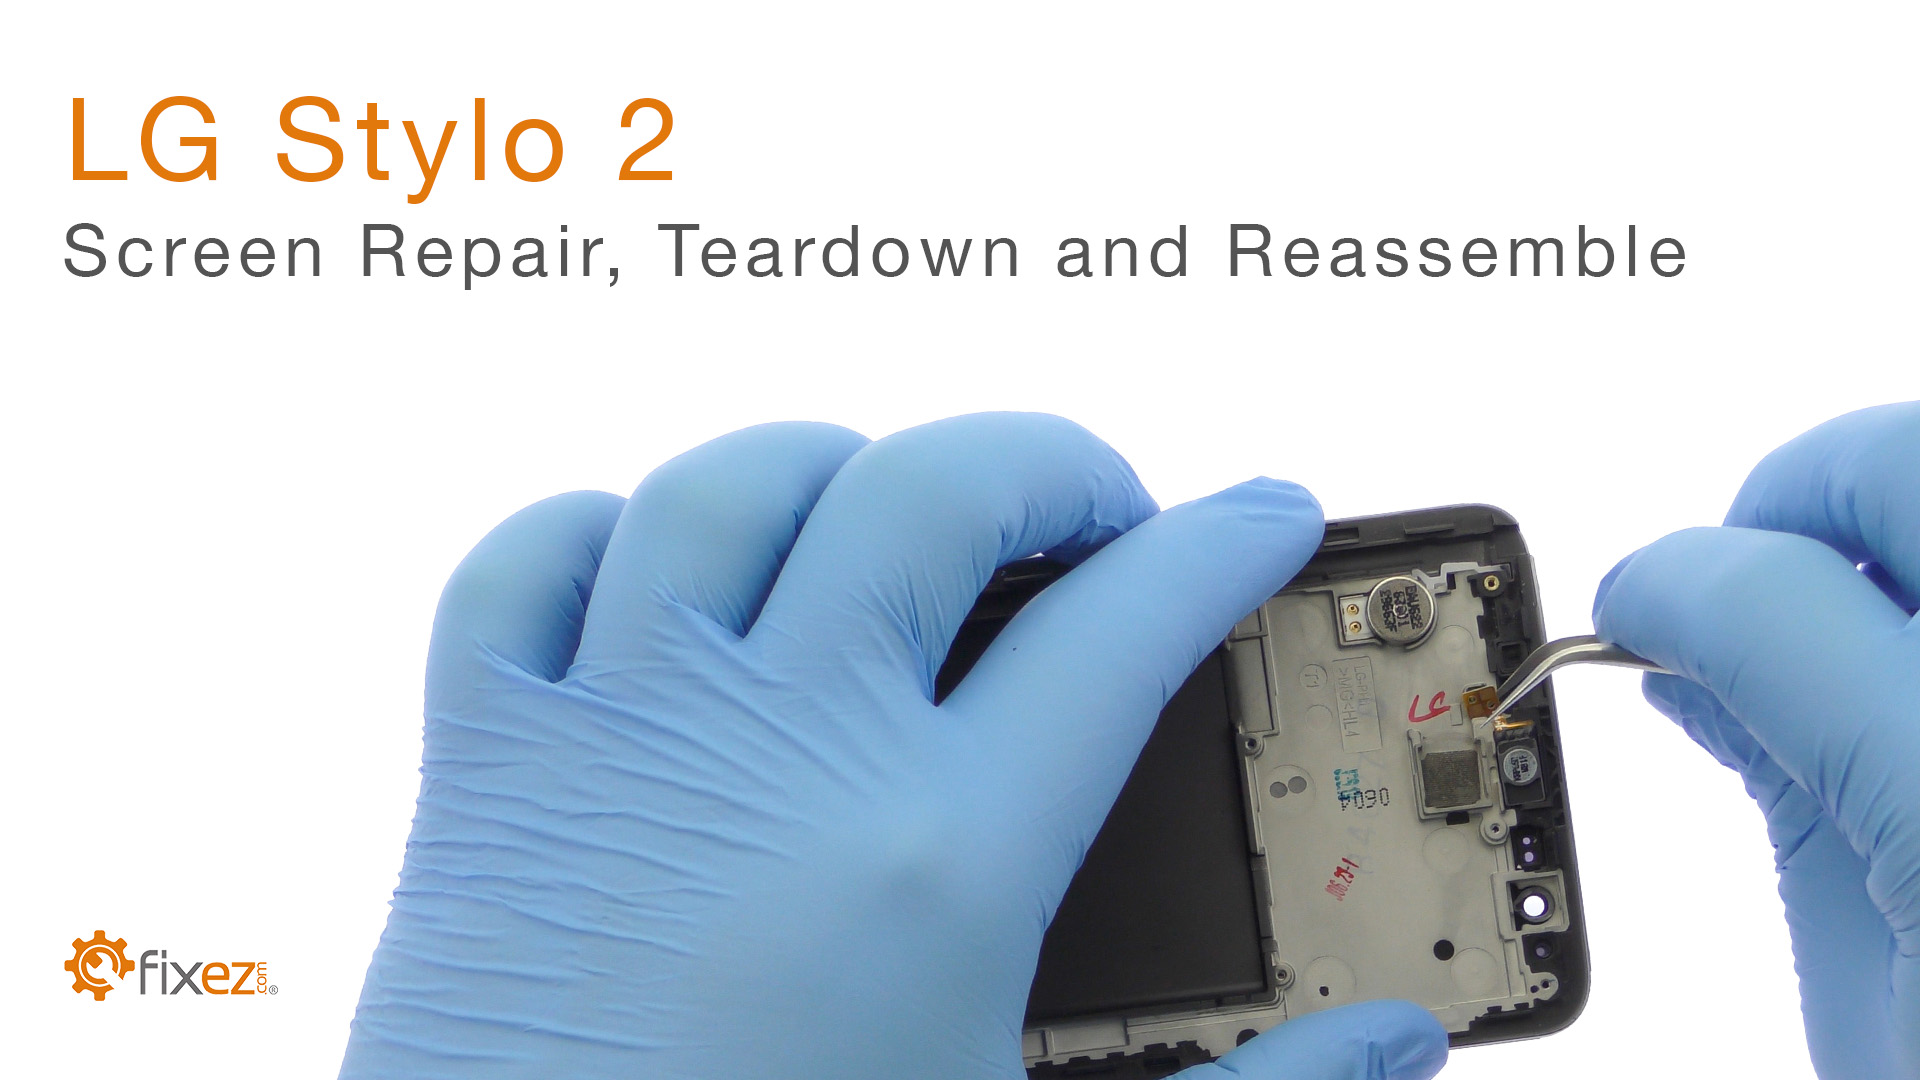 LG Stylo 2 Screen Repair, Teardown and Reassemble